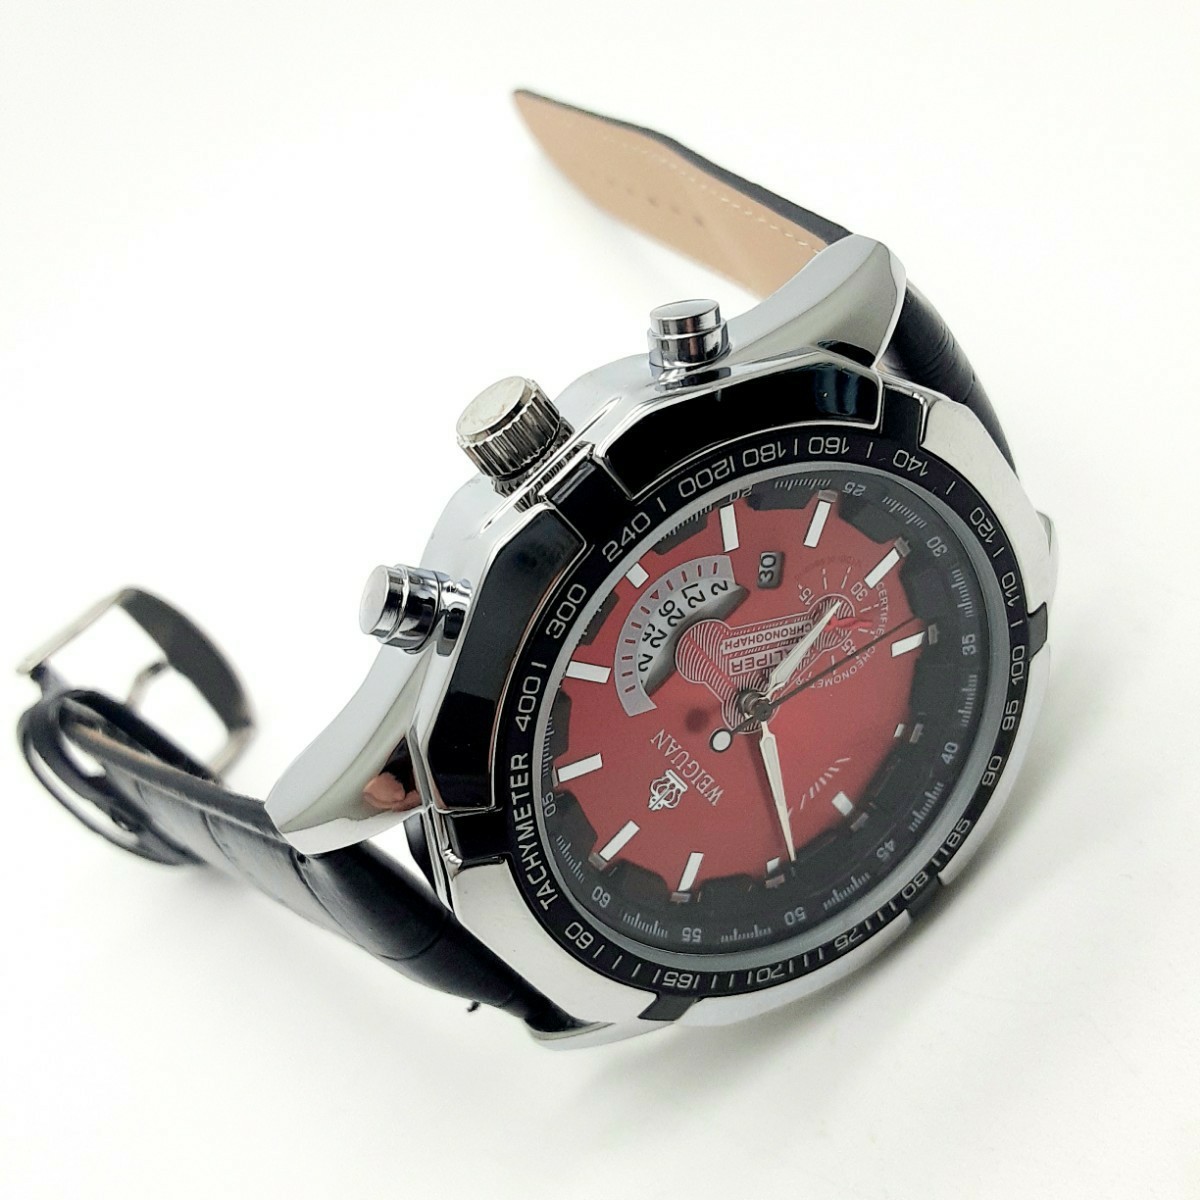 日/祝も発送 新品 デュアル クロノグラフ WEIGUAN 腕時計メンズ ラグジュアリーレザー 通販